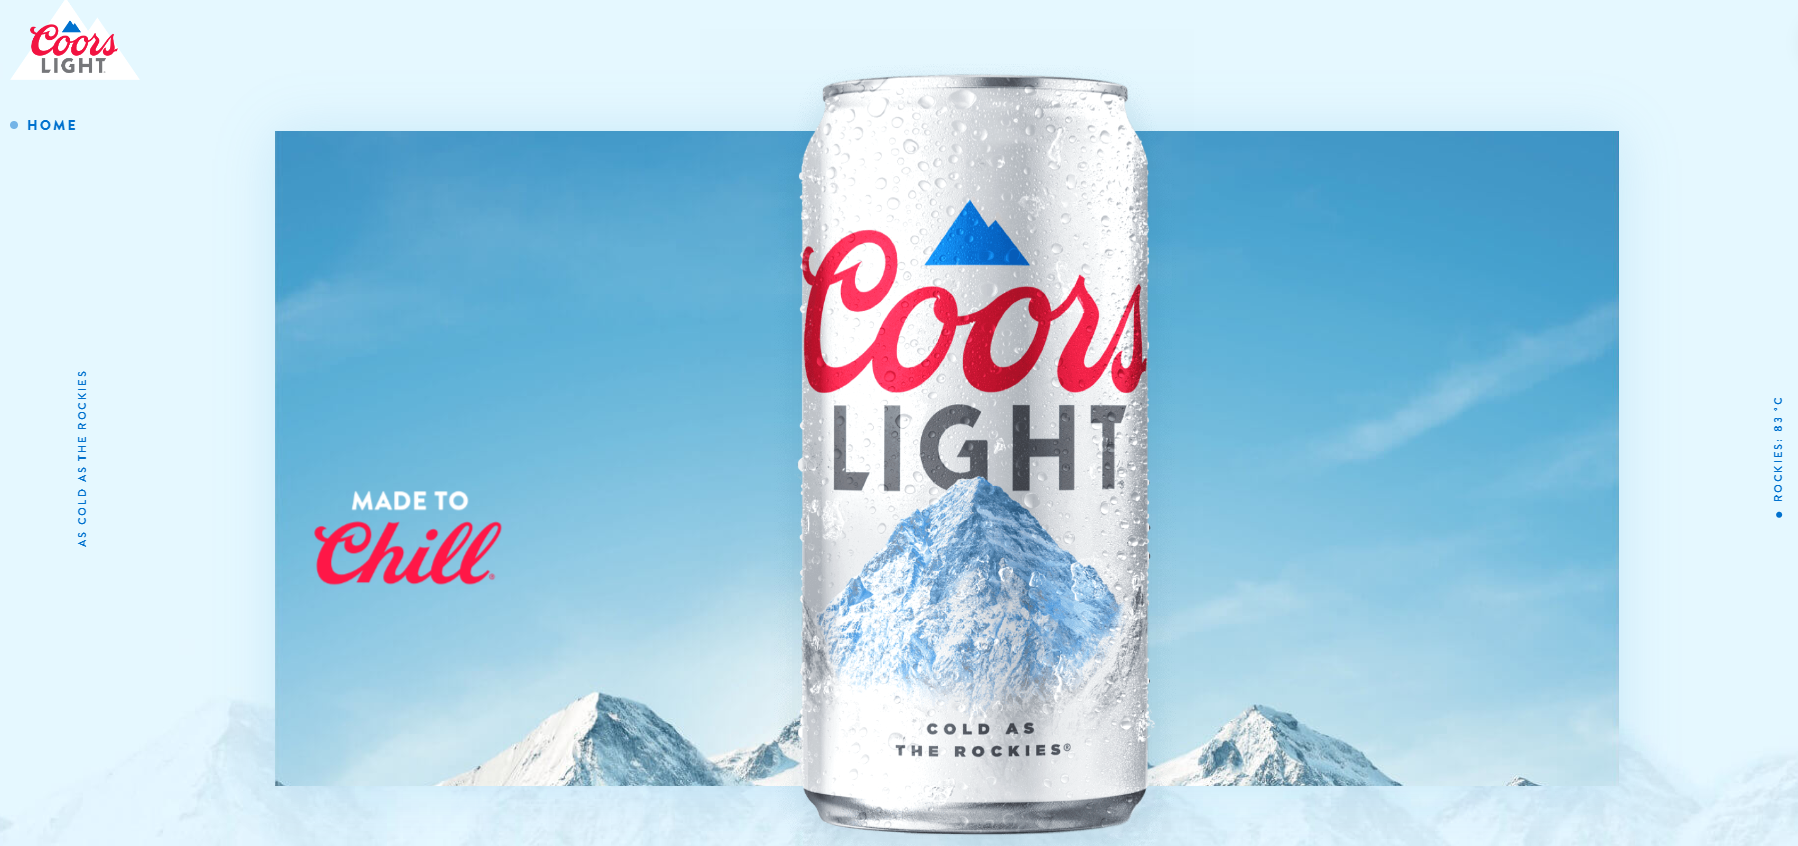 Coors Light утверждает, что их пиво такое же холодное, как в Скалистых горах.